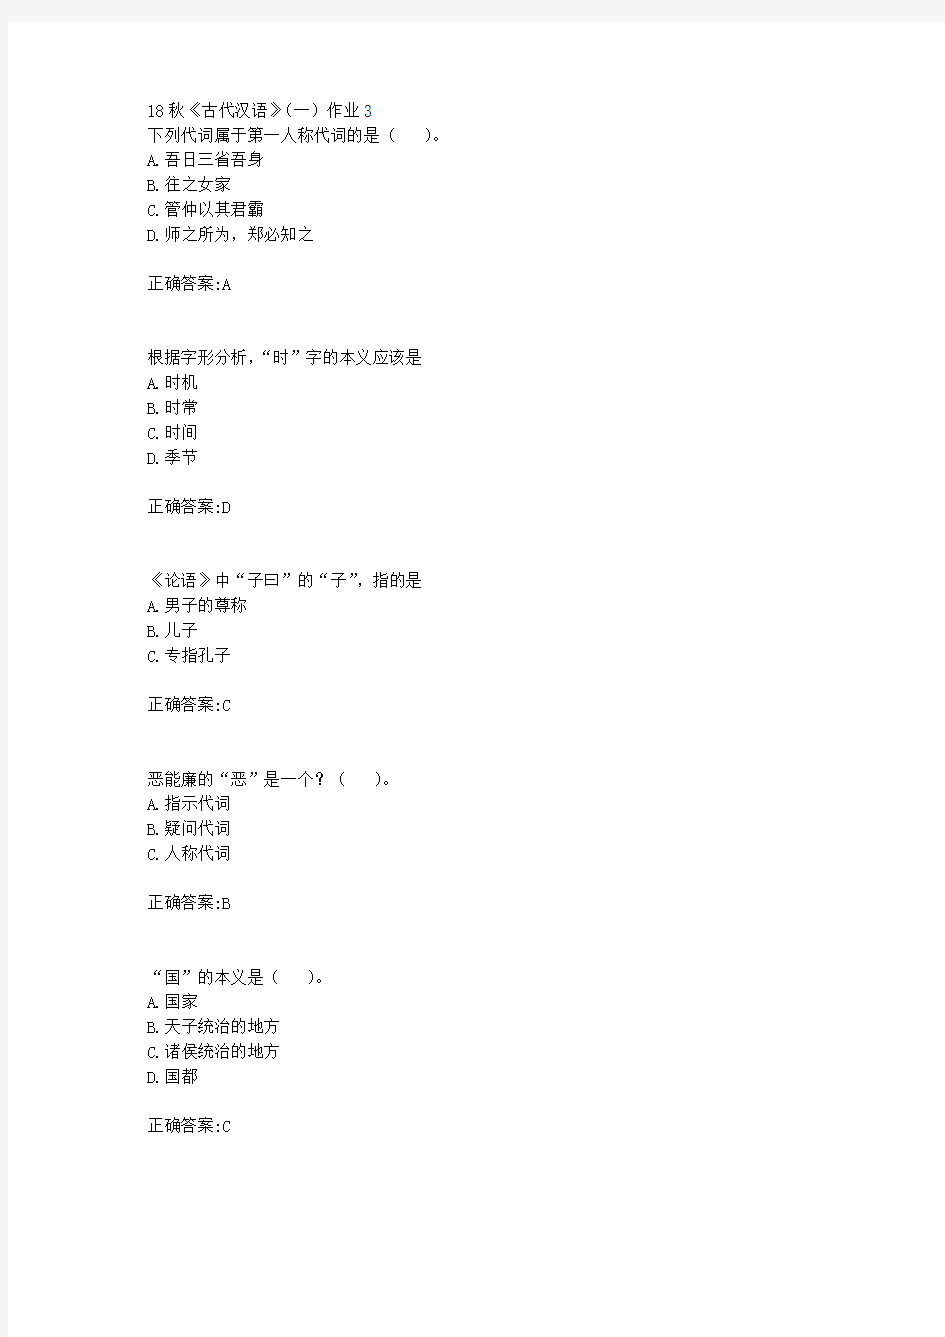 北京语言大学 18秋《古代汉语》(一)作业3满分答案